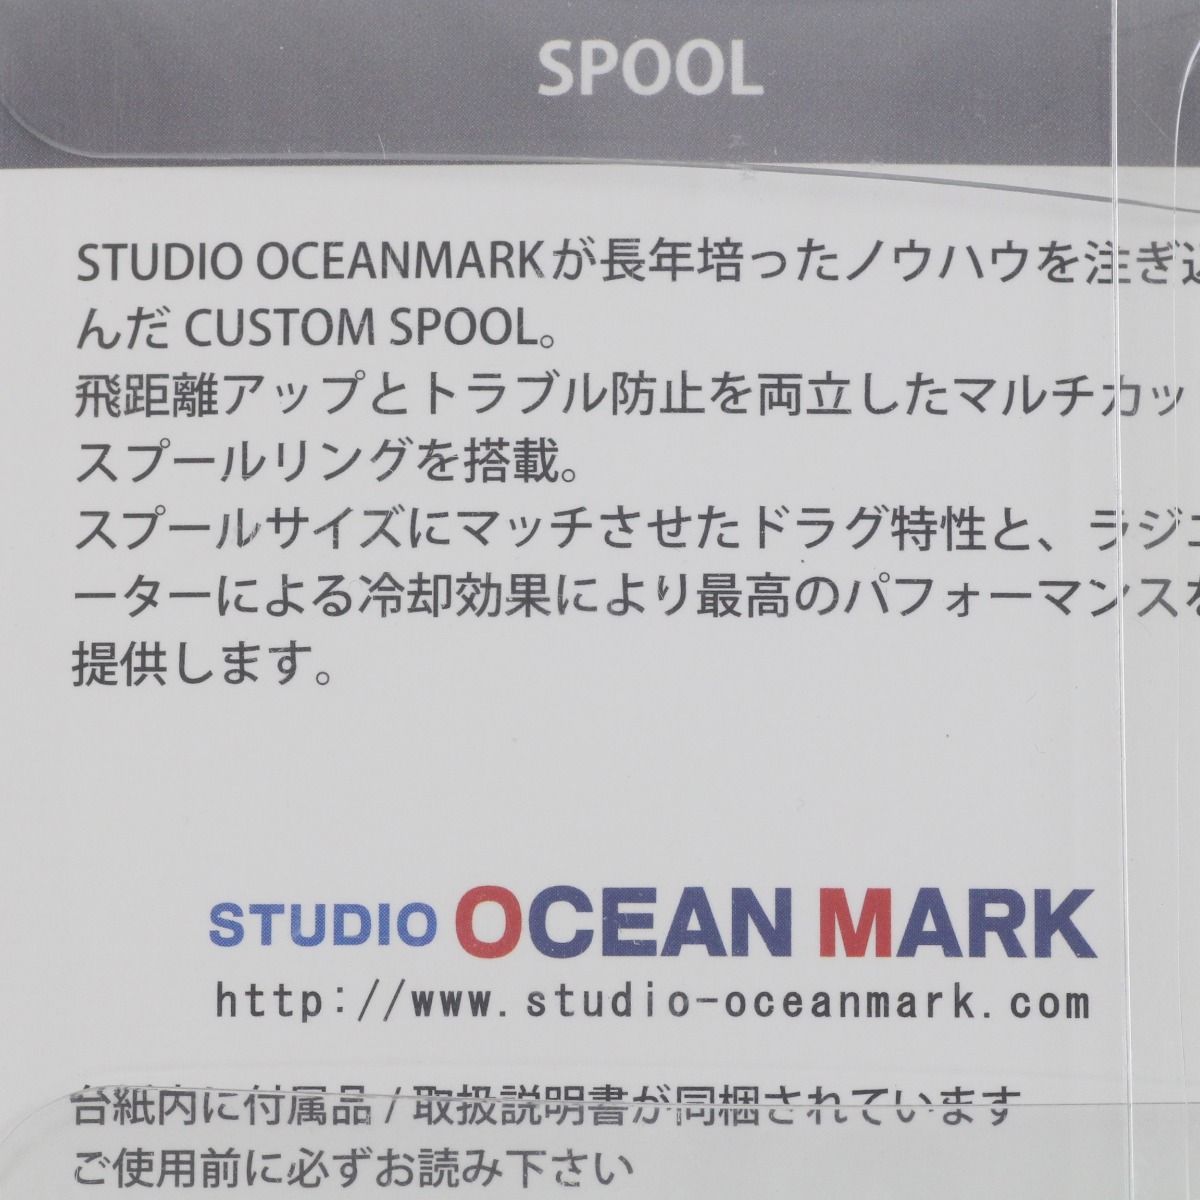 STUDIO OCEAN MARK スプール NO LIMITS 20ST23000BM - なんでも